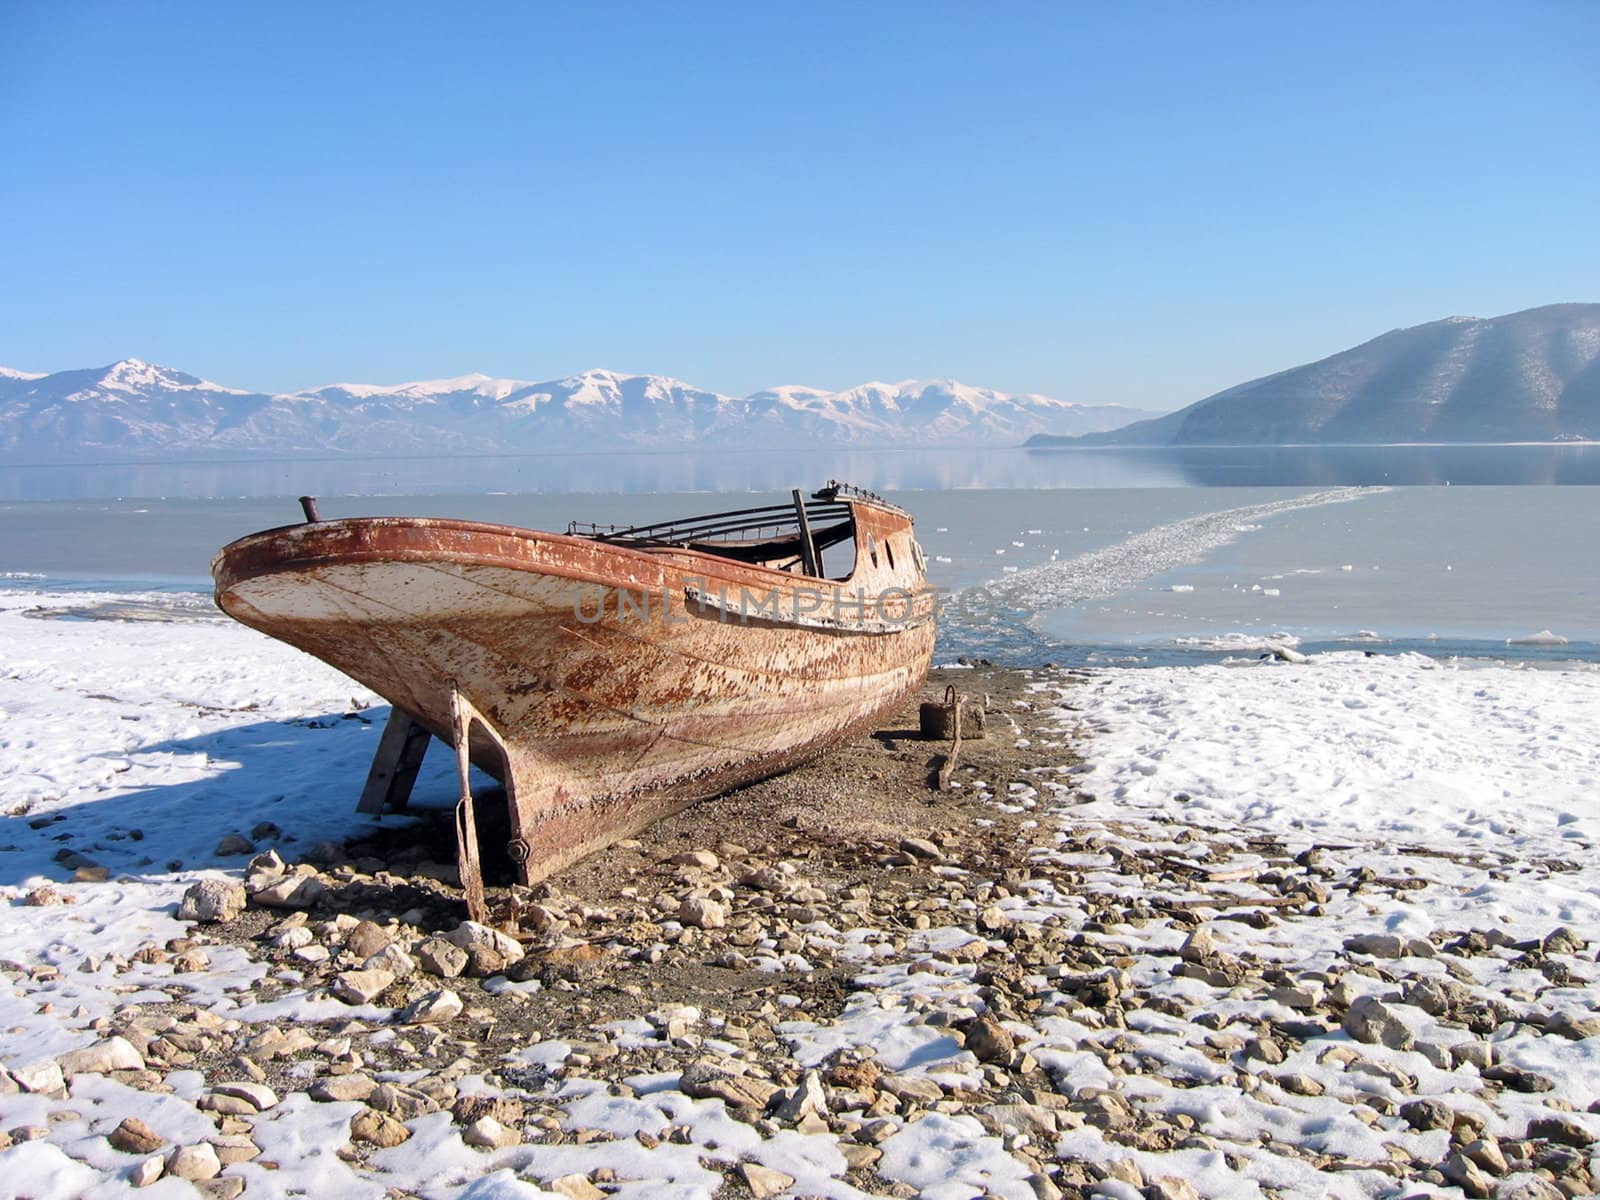 Old lonely boat abandoned at snowy coast,lake prespa, macedonia